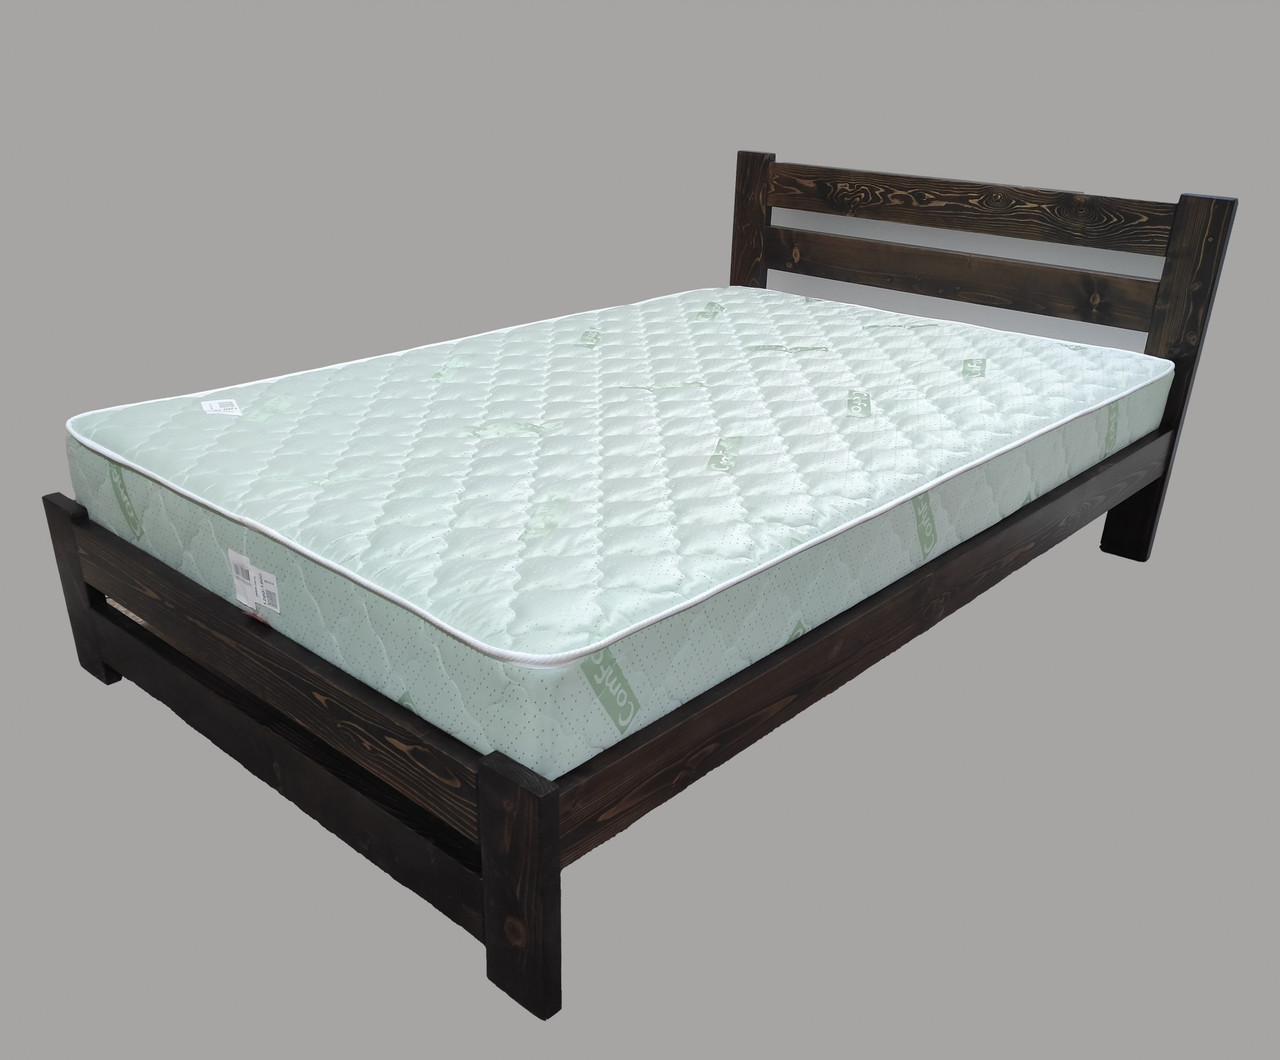 Двоспальне ліжко з масиву дуба Палермо плюс 160х200 Барвник Tin 120 Крок ламелей 2,5 см.